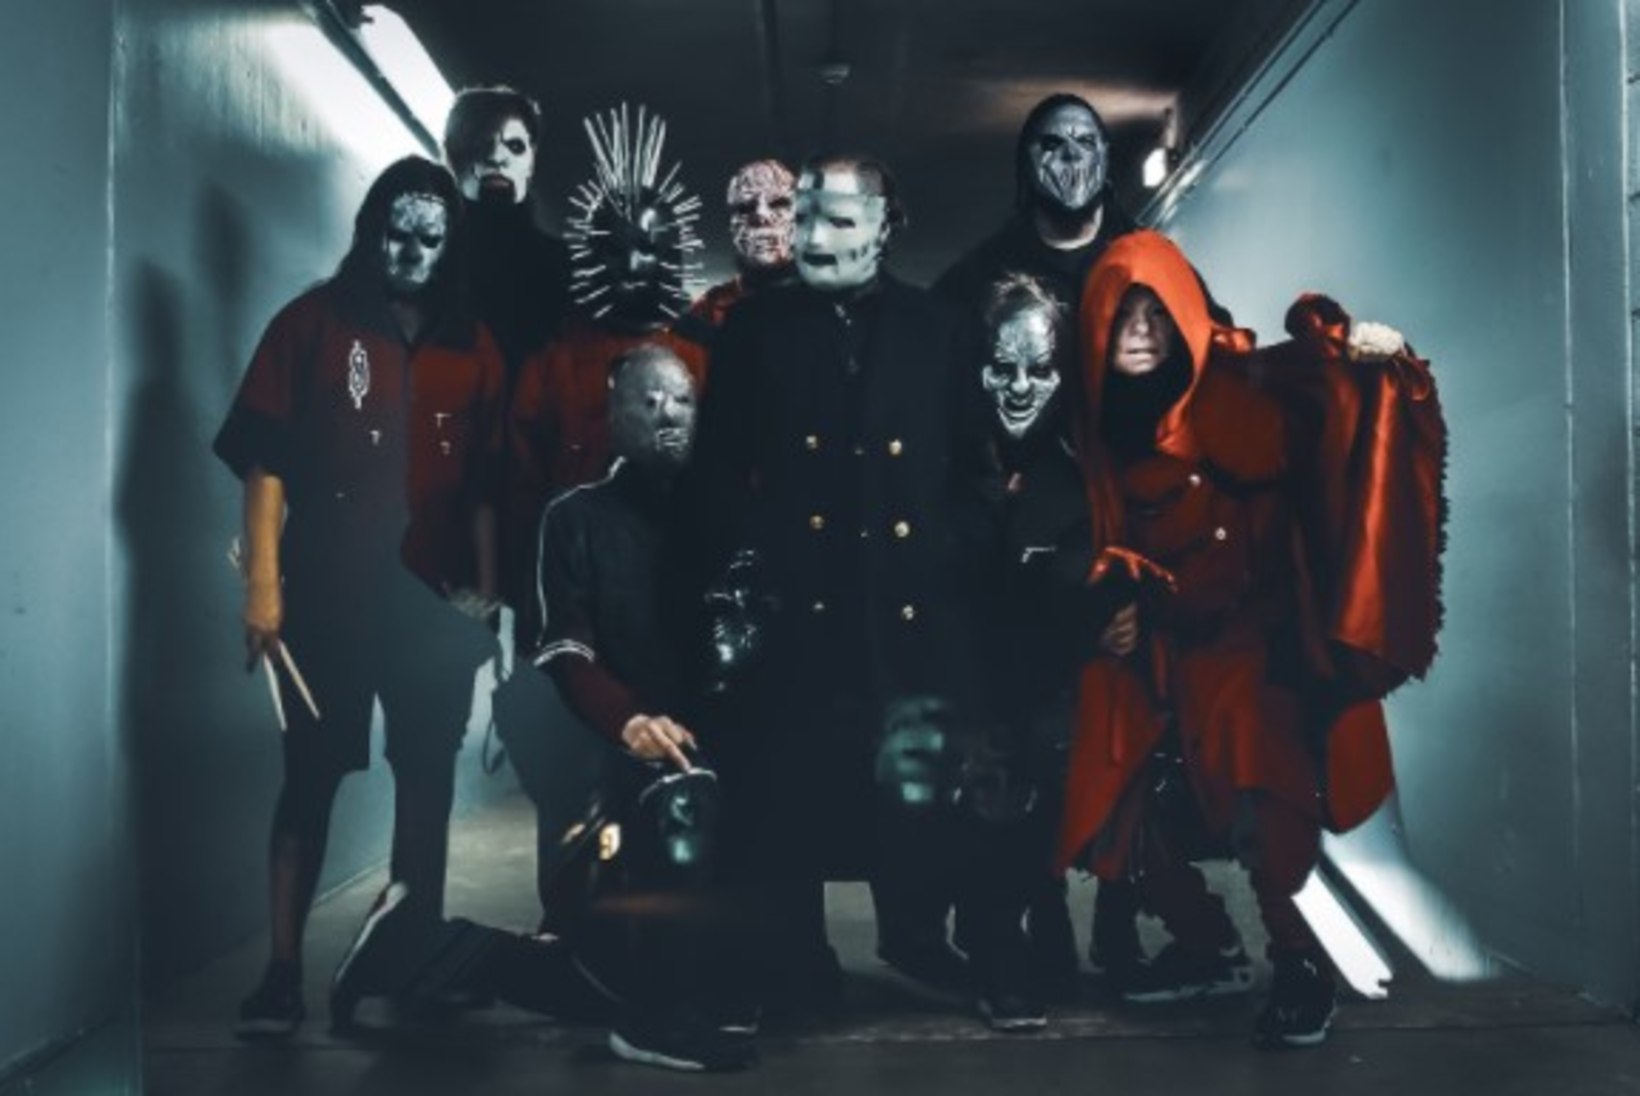 Tähelepanuväärse väljanägemisega Ameerika nu-metal bänd Slipknot tuleb augustis Eestisse